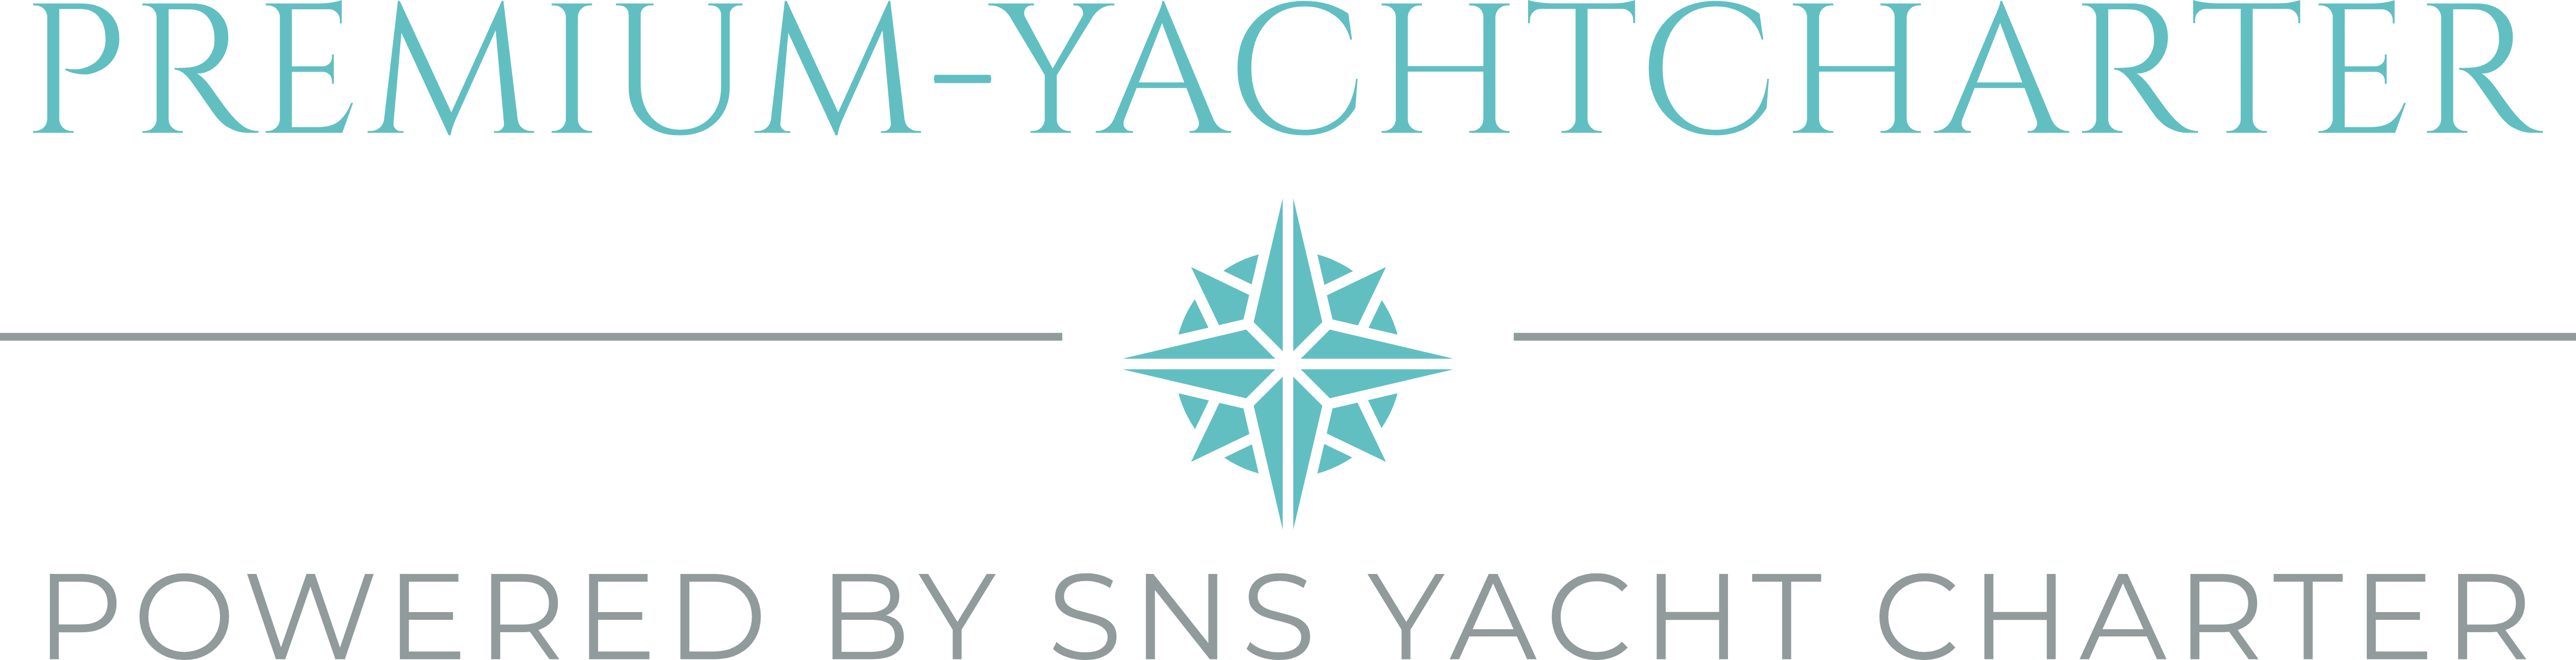 Premium-Yachtcharter